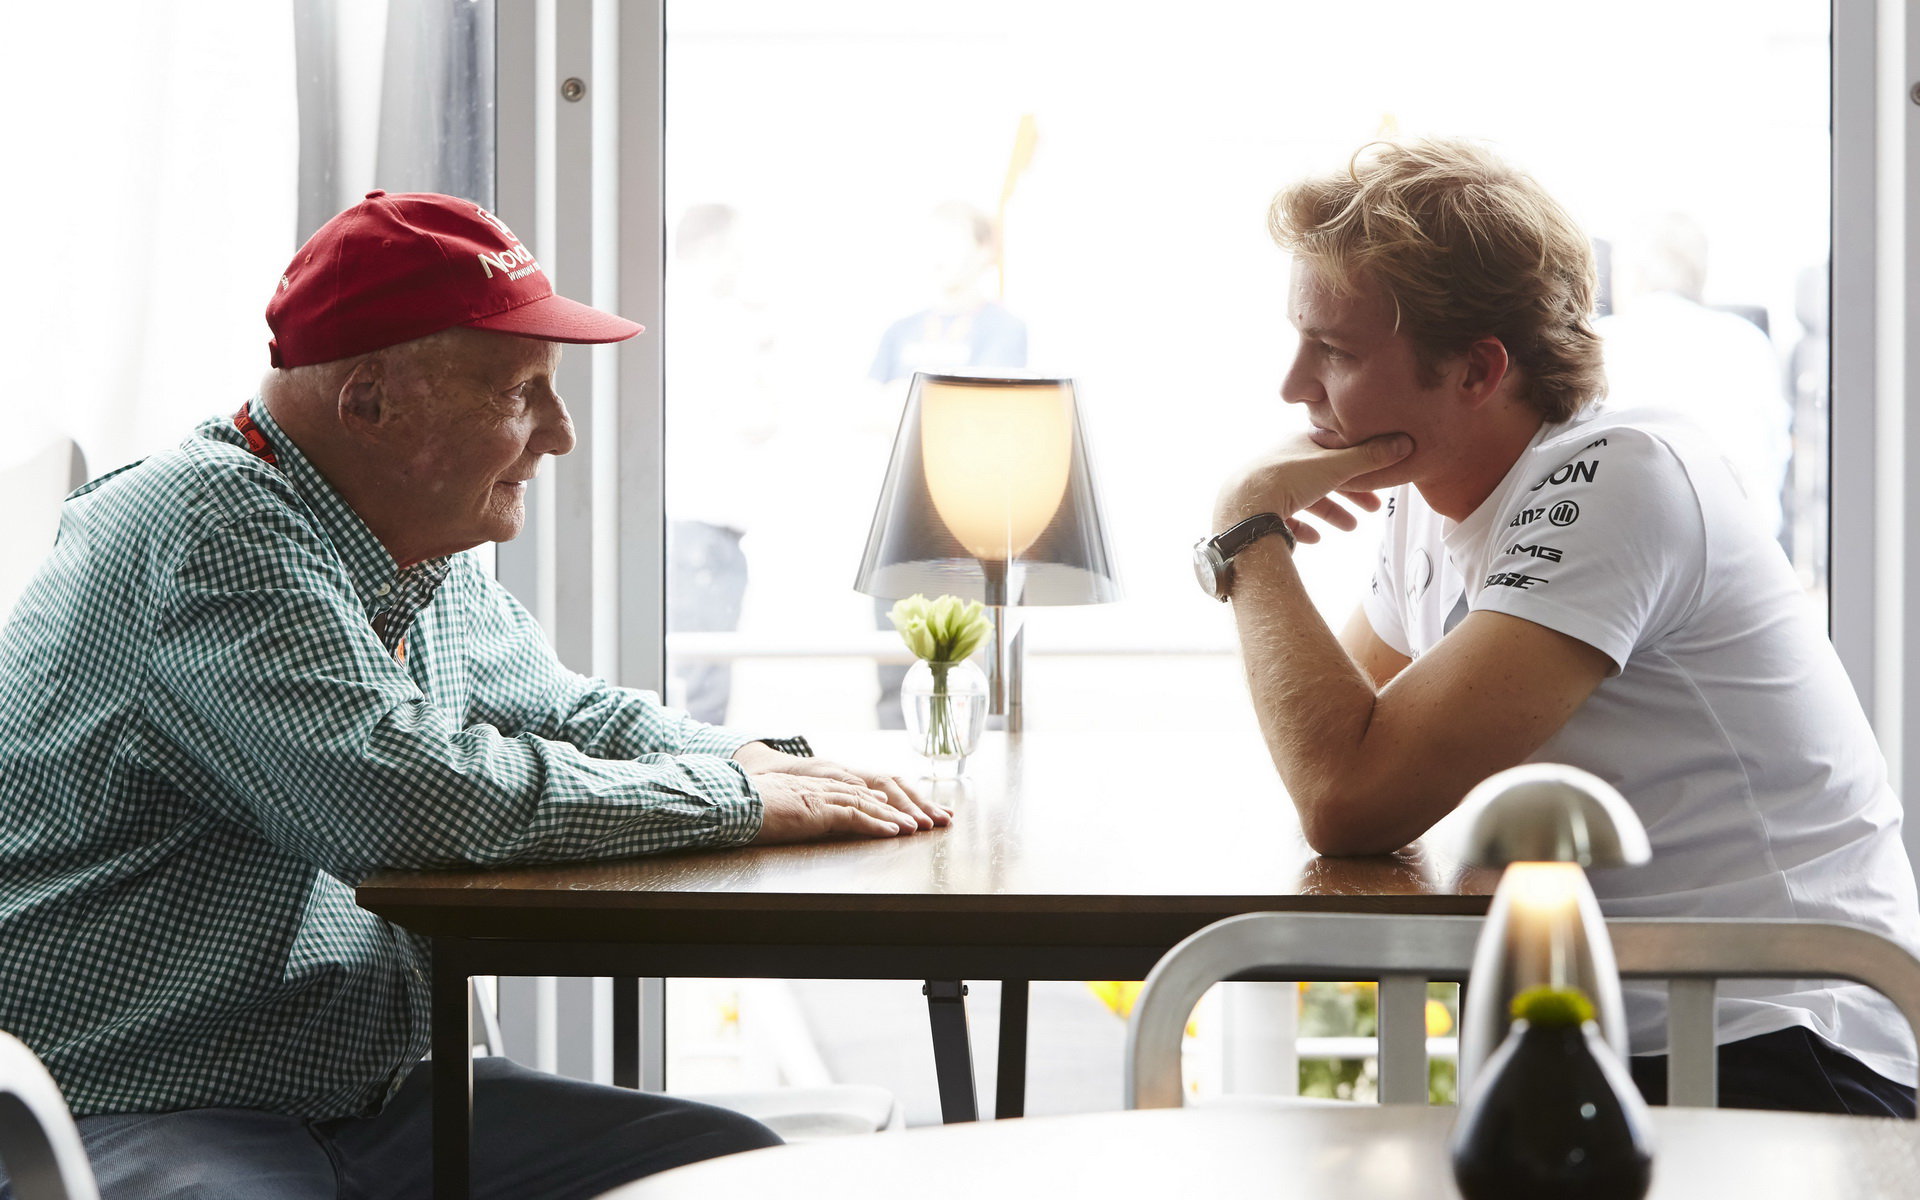 Niki Lauda měl v otázce viny jasno velice brzy